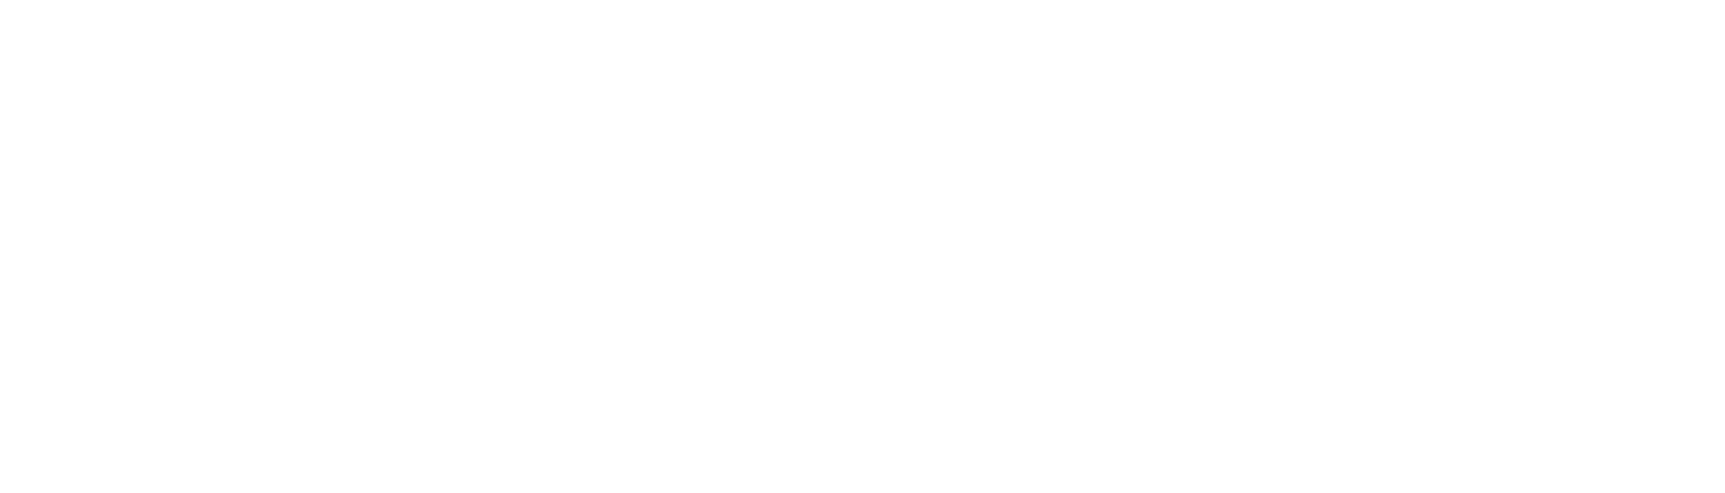 kryptotrejder-logo